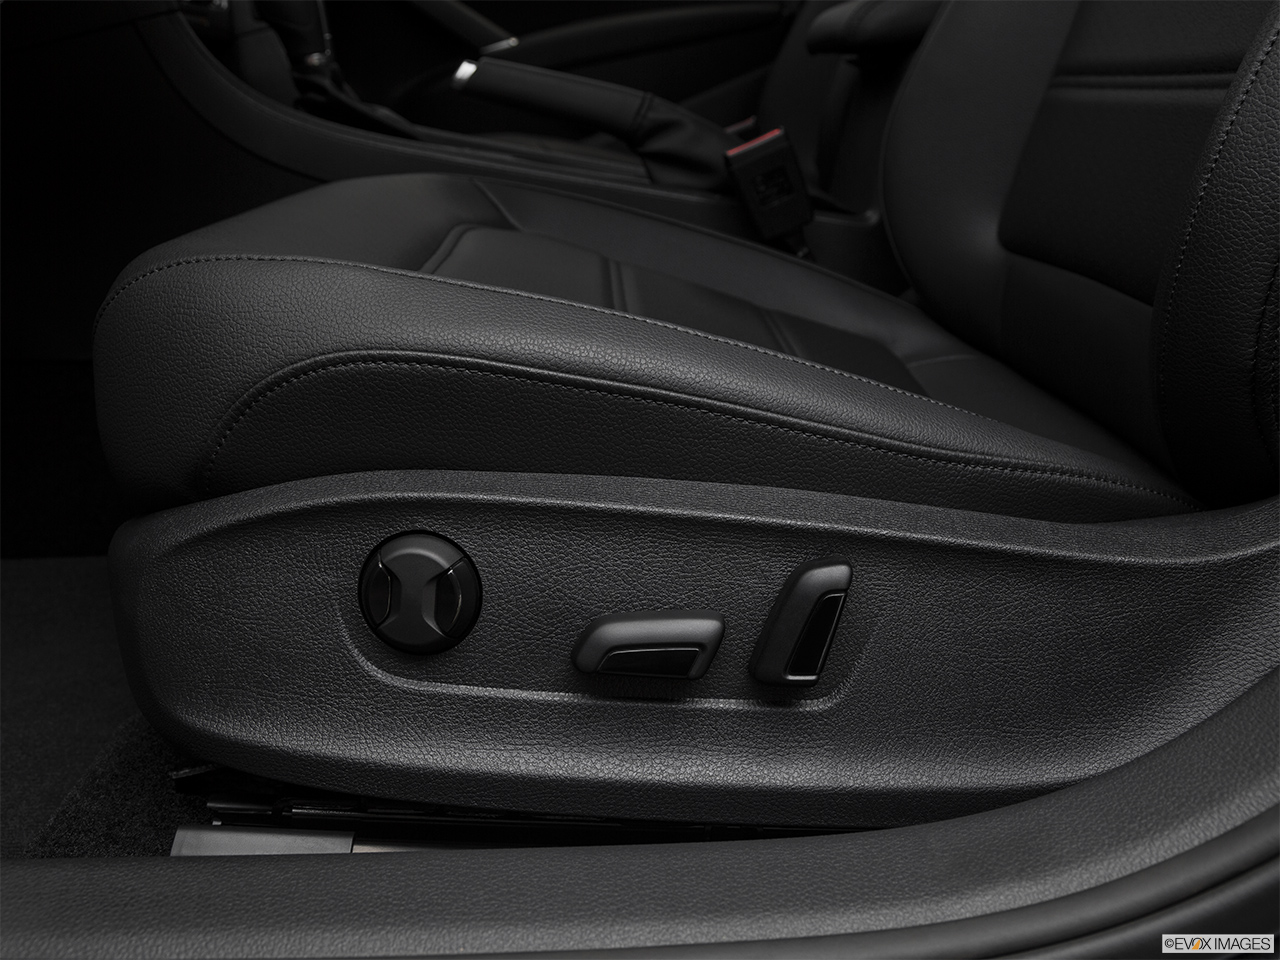 2018 Volkswagen Passat R-Line Seat Adjustment Controllers. 